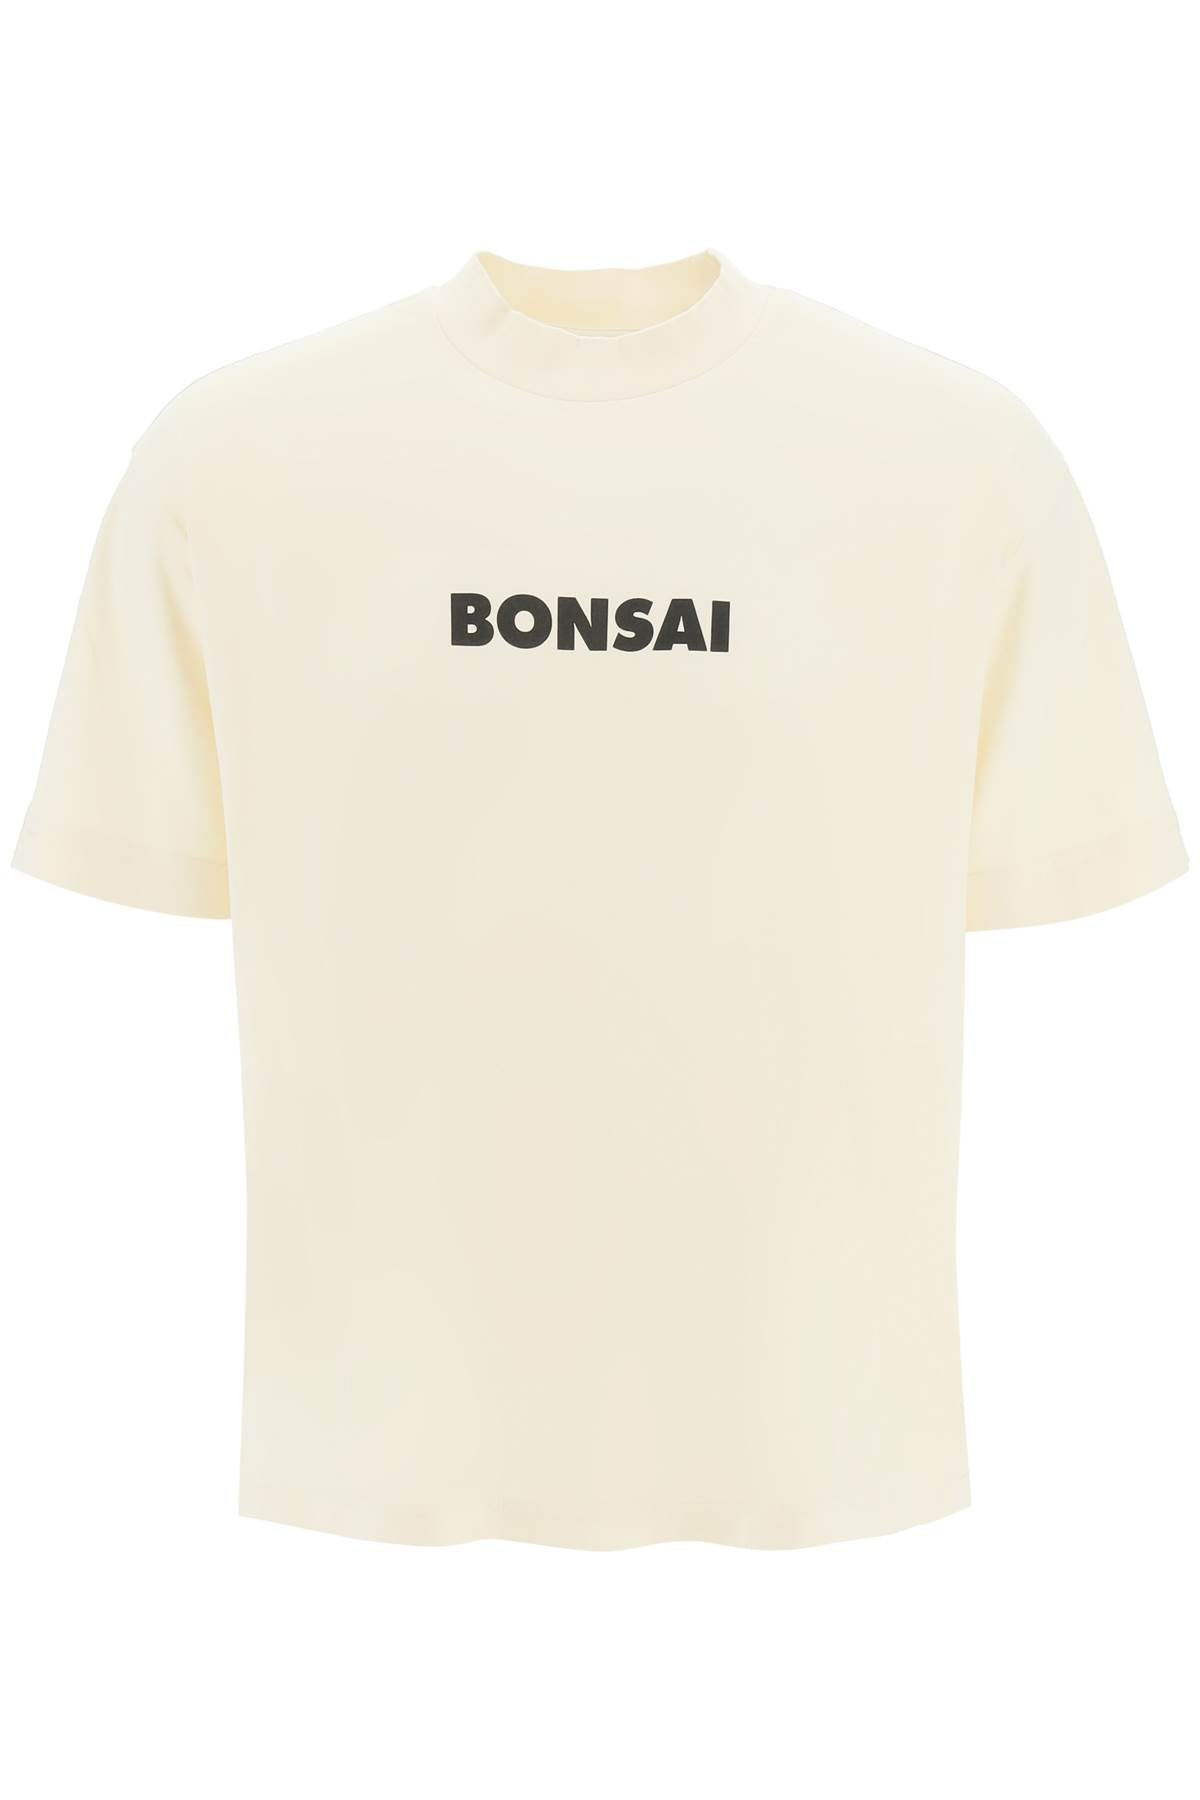 Bonsai-T Shirt Stampa Logo-Uomo